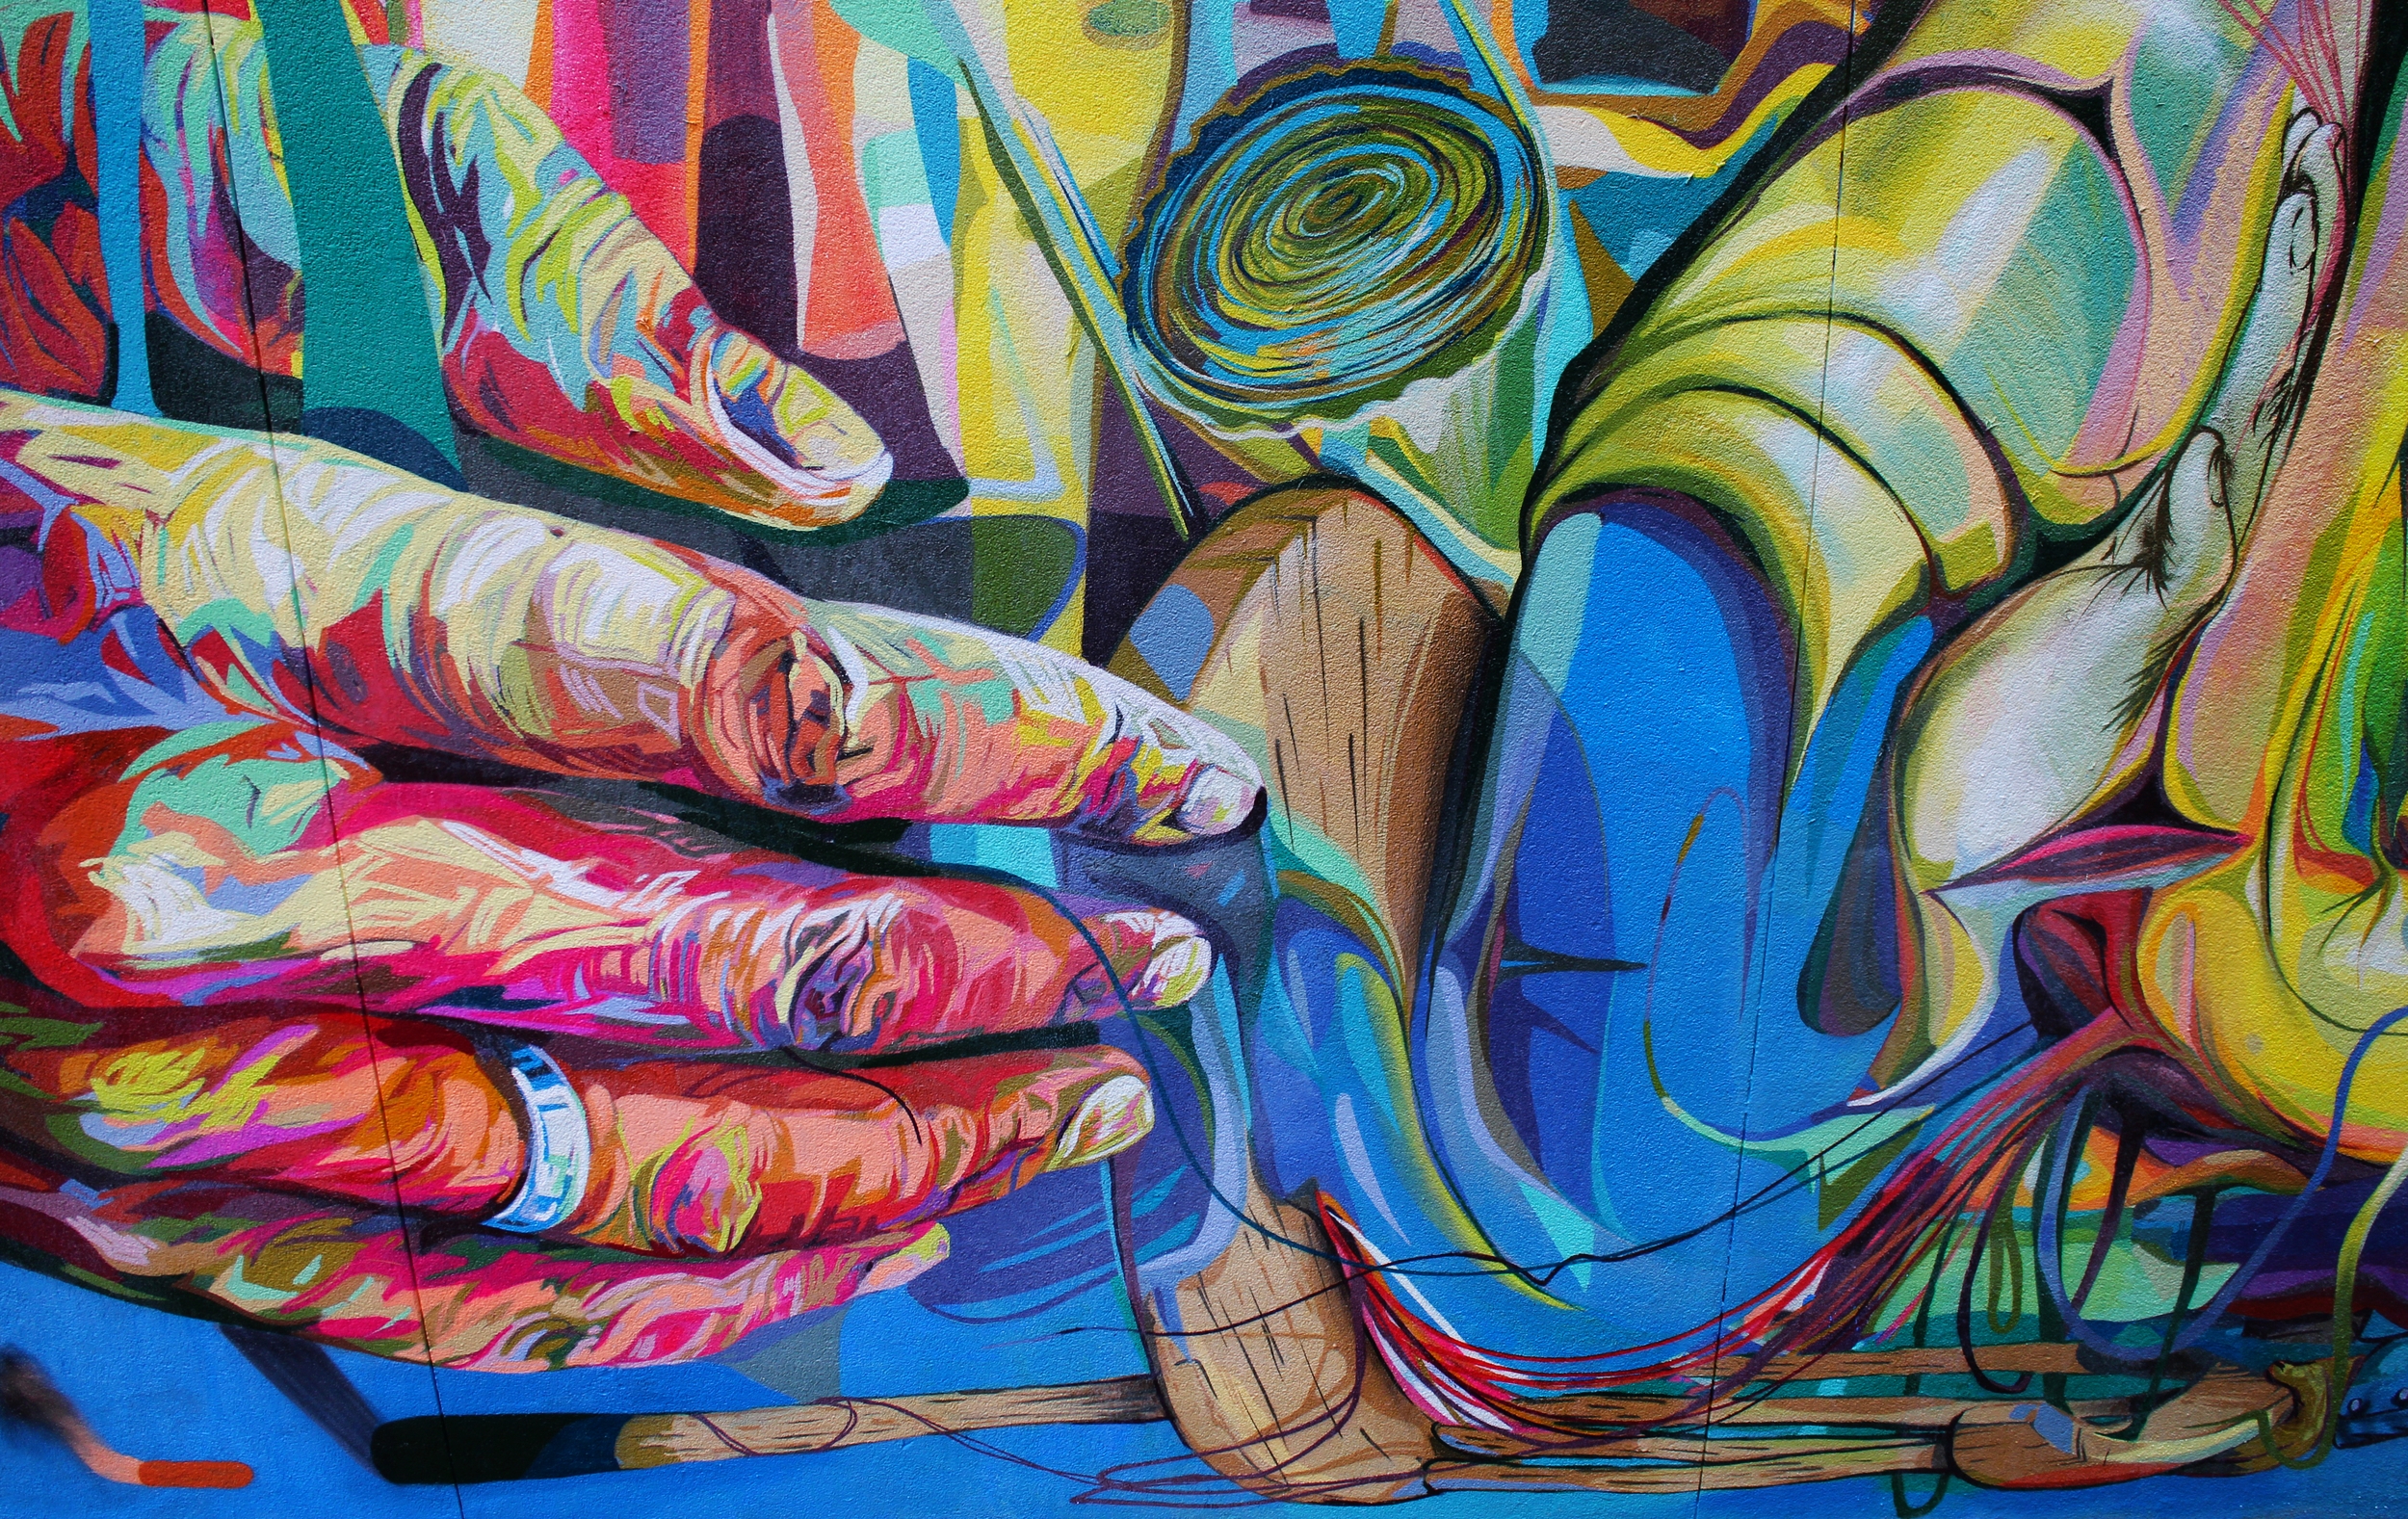   LERCH'S BLANK CANVAS,&nbsp; Trinity-Bellwoods Park, Toronto, ON, 2014  25x50', latex and spray paint 